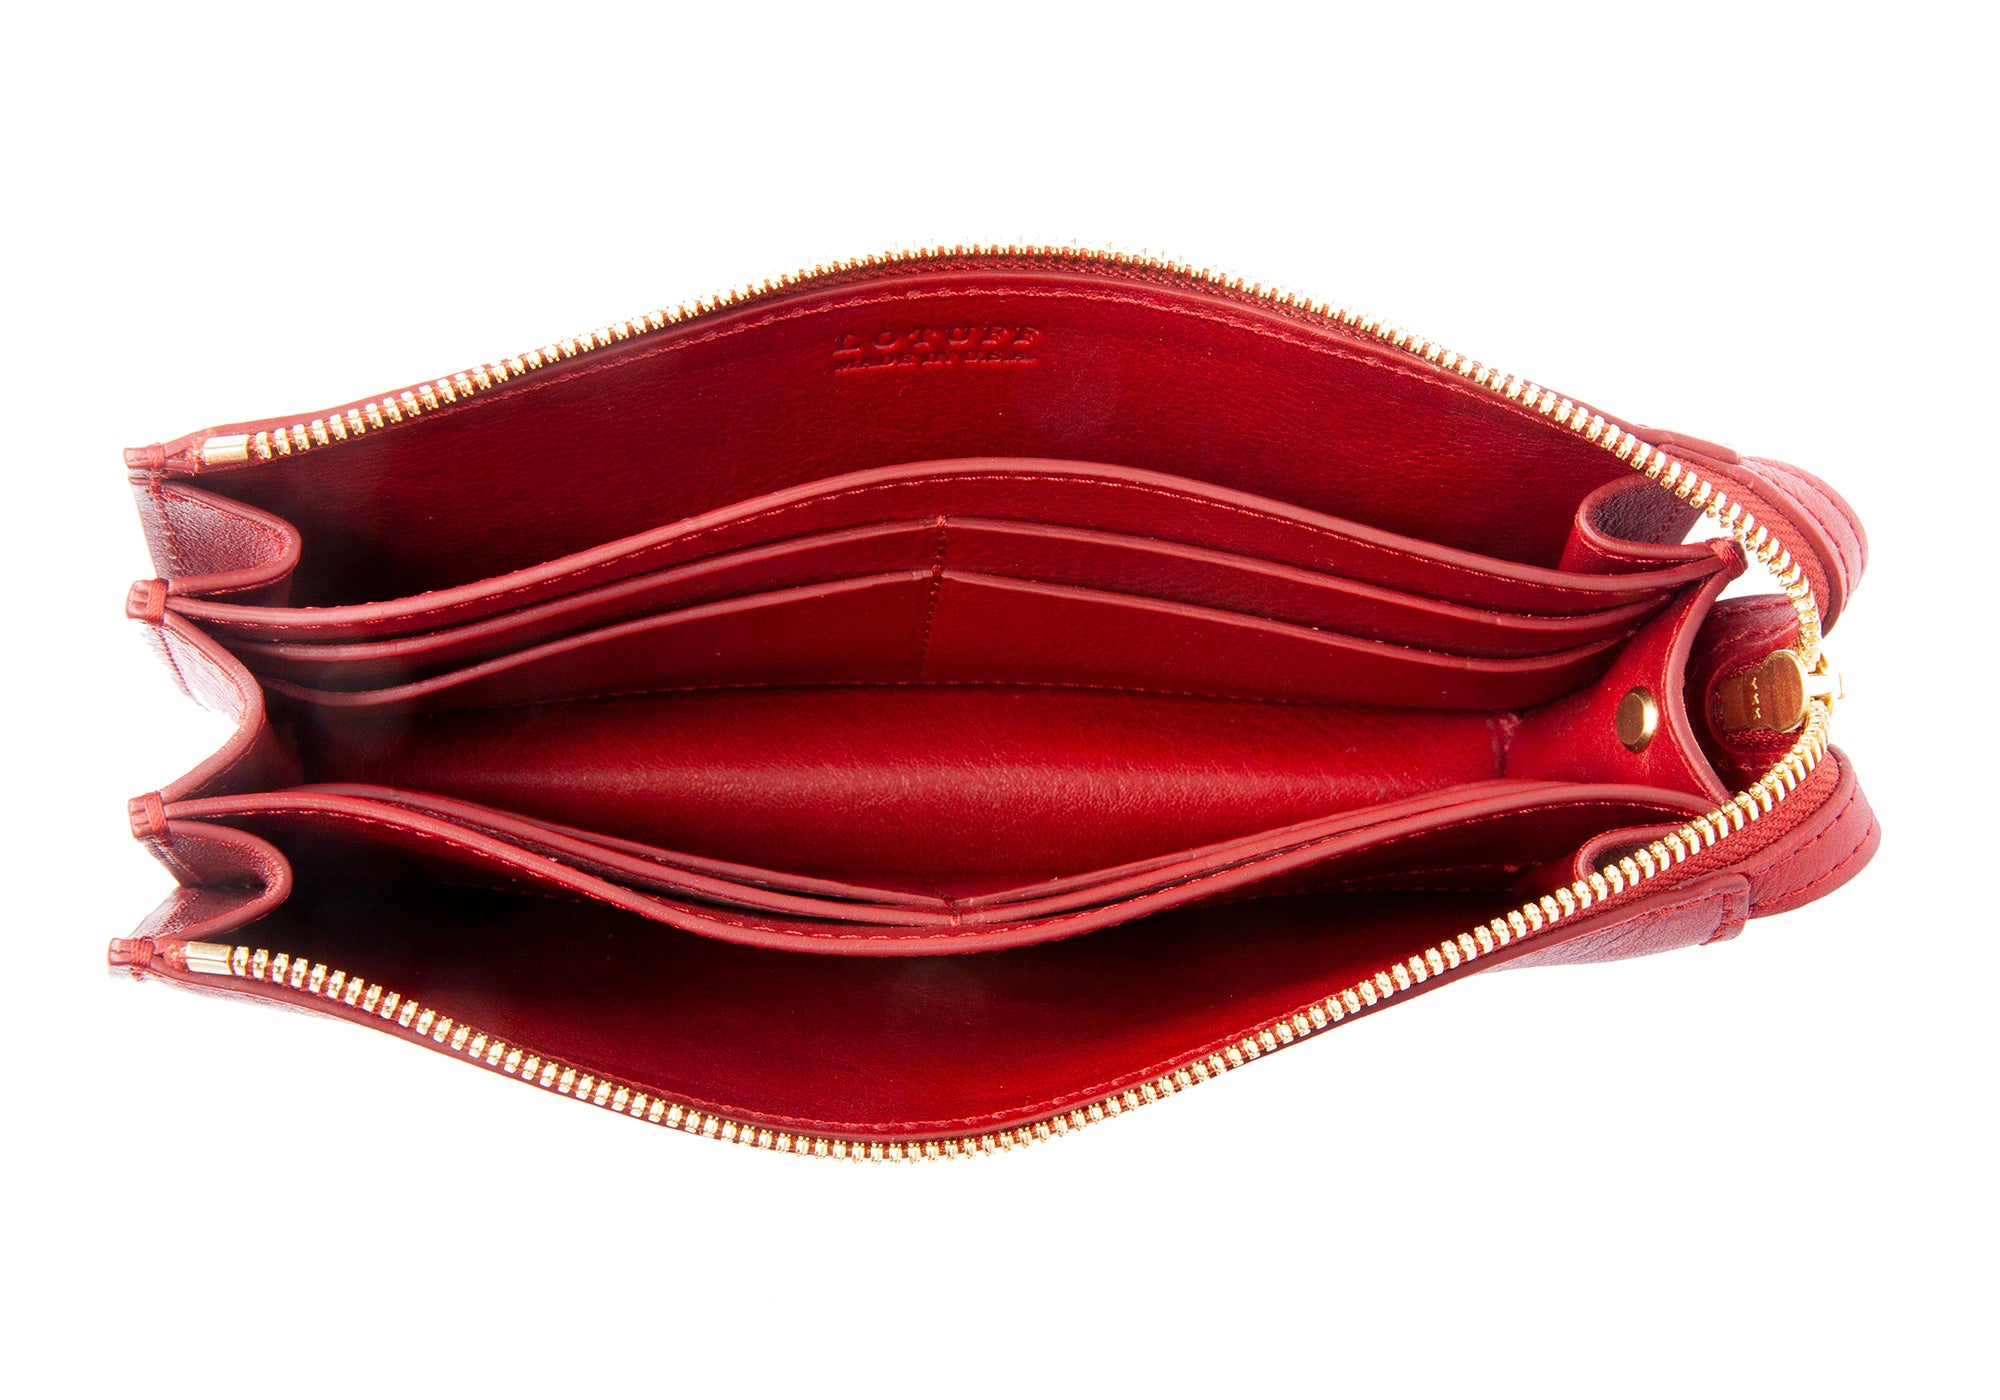 Tripp Wallet Red